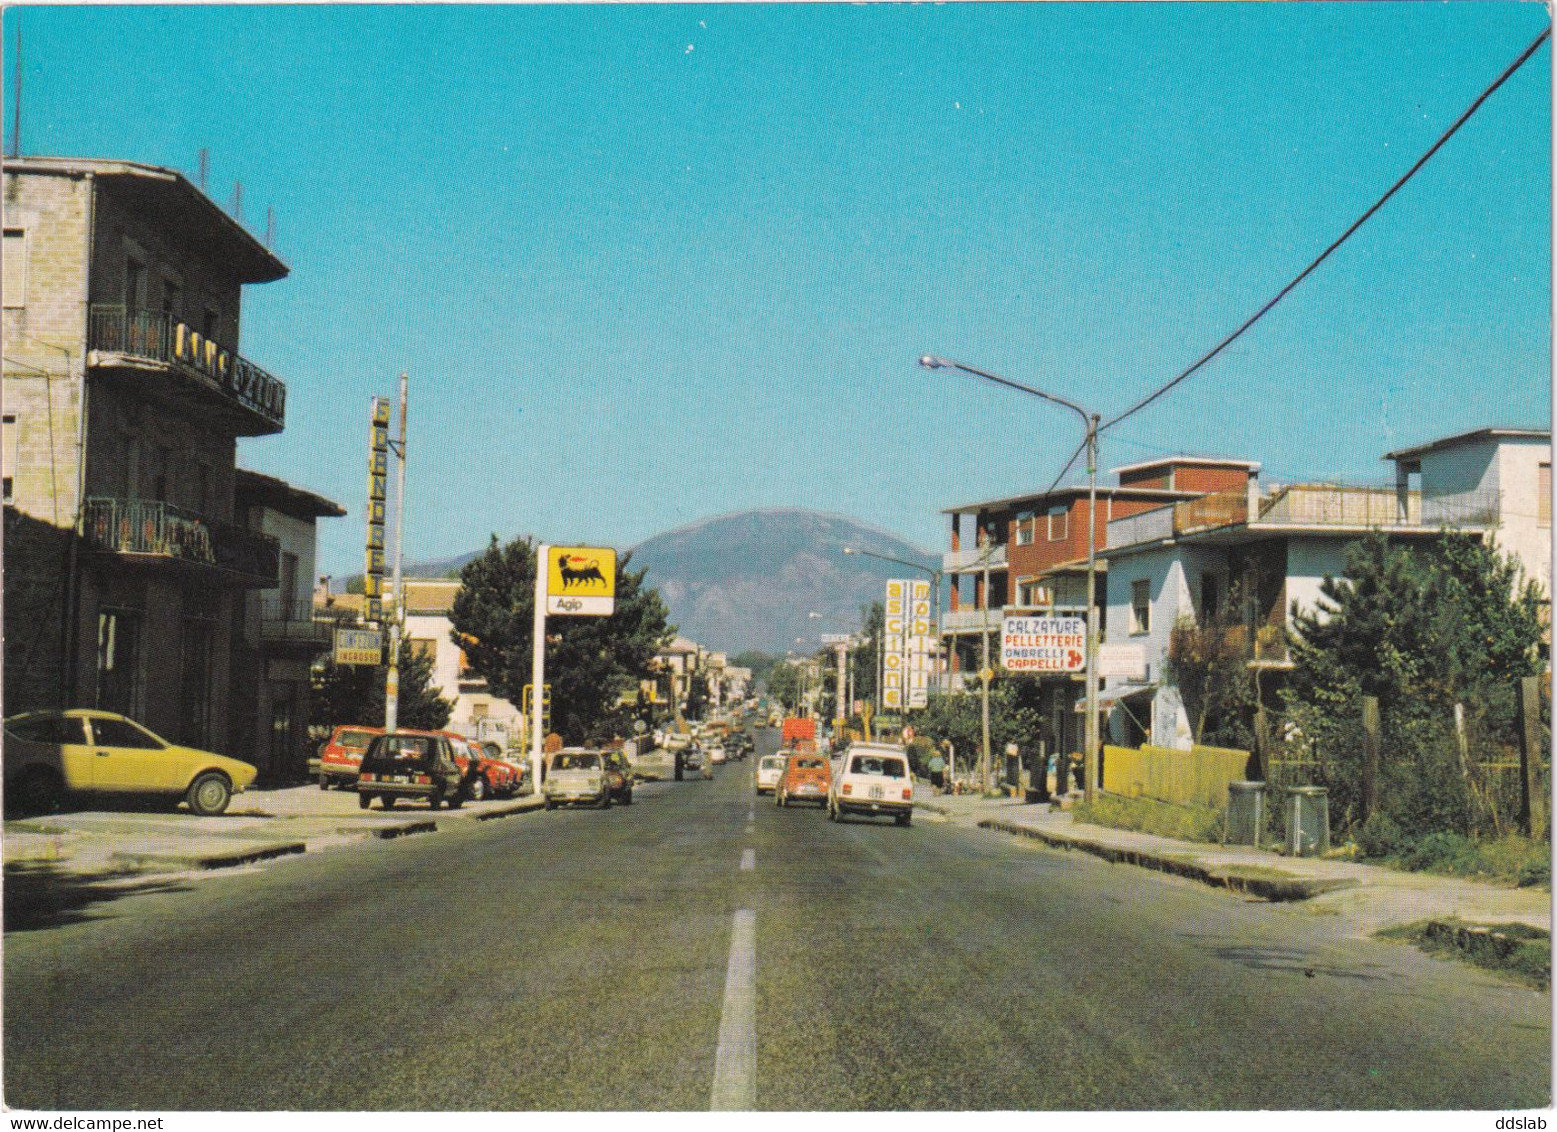 Vairano Scalo (Caserta) - Anni '70 - Via Napoli - Caserta